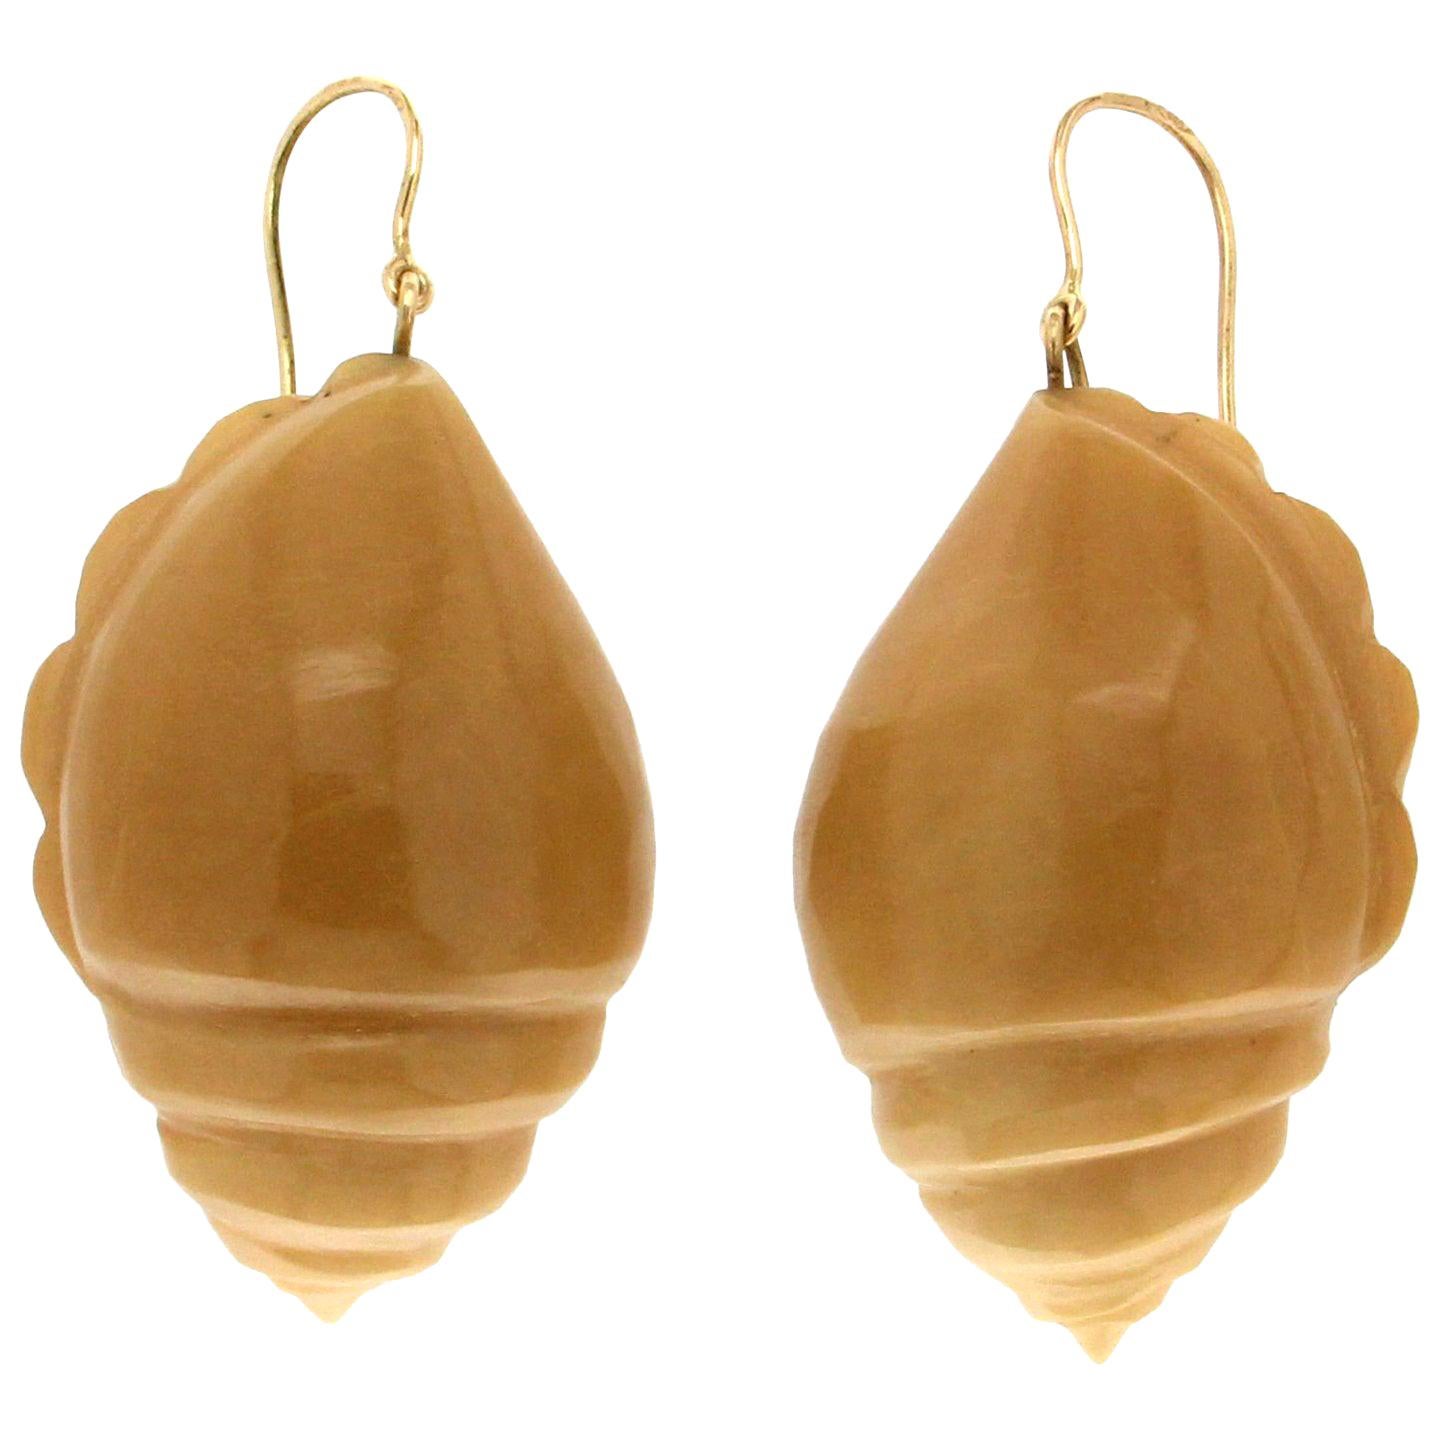 Handcraft Bone Seashell 18 Karat Yellow Gold Drop Earrings